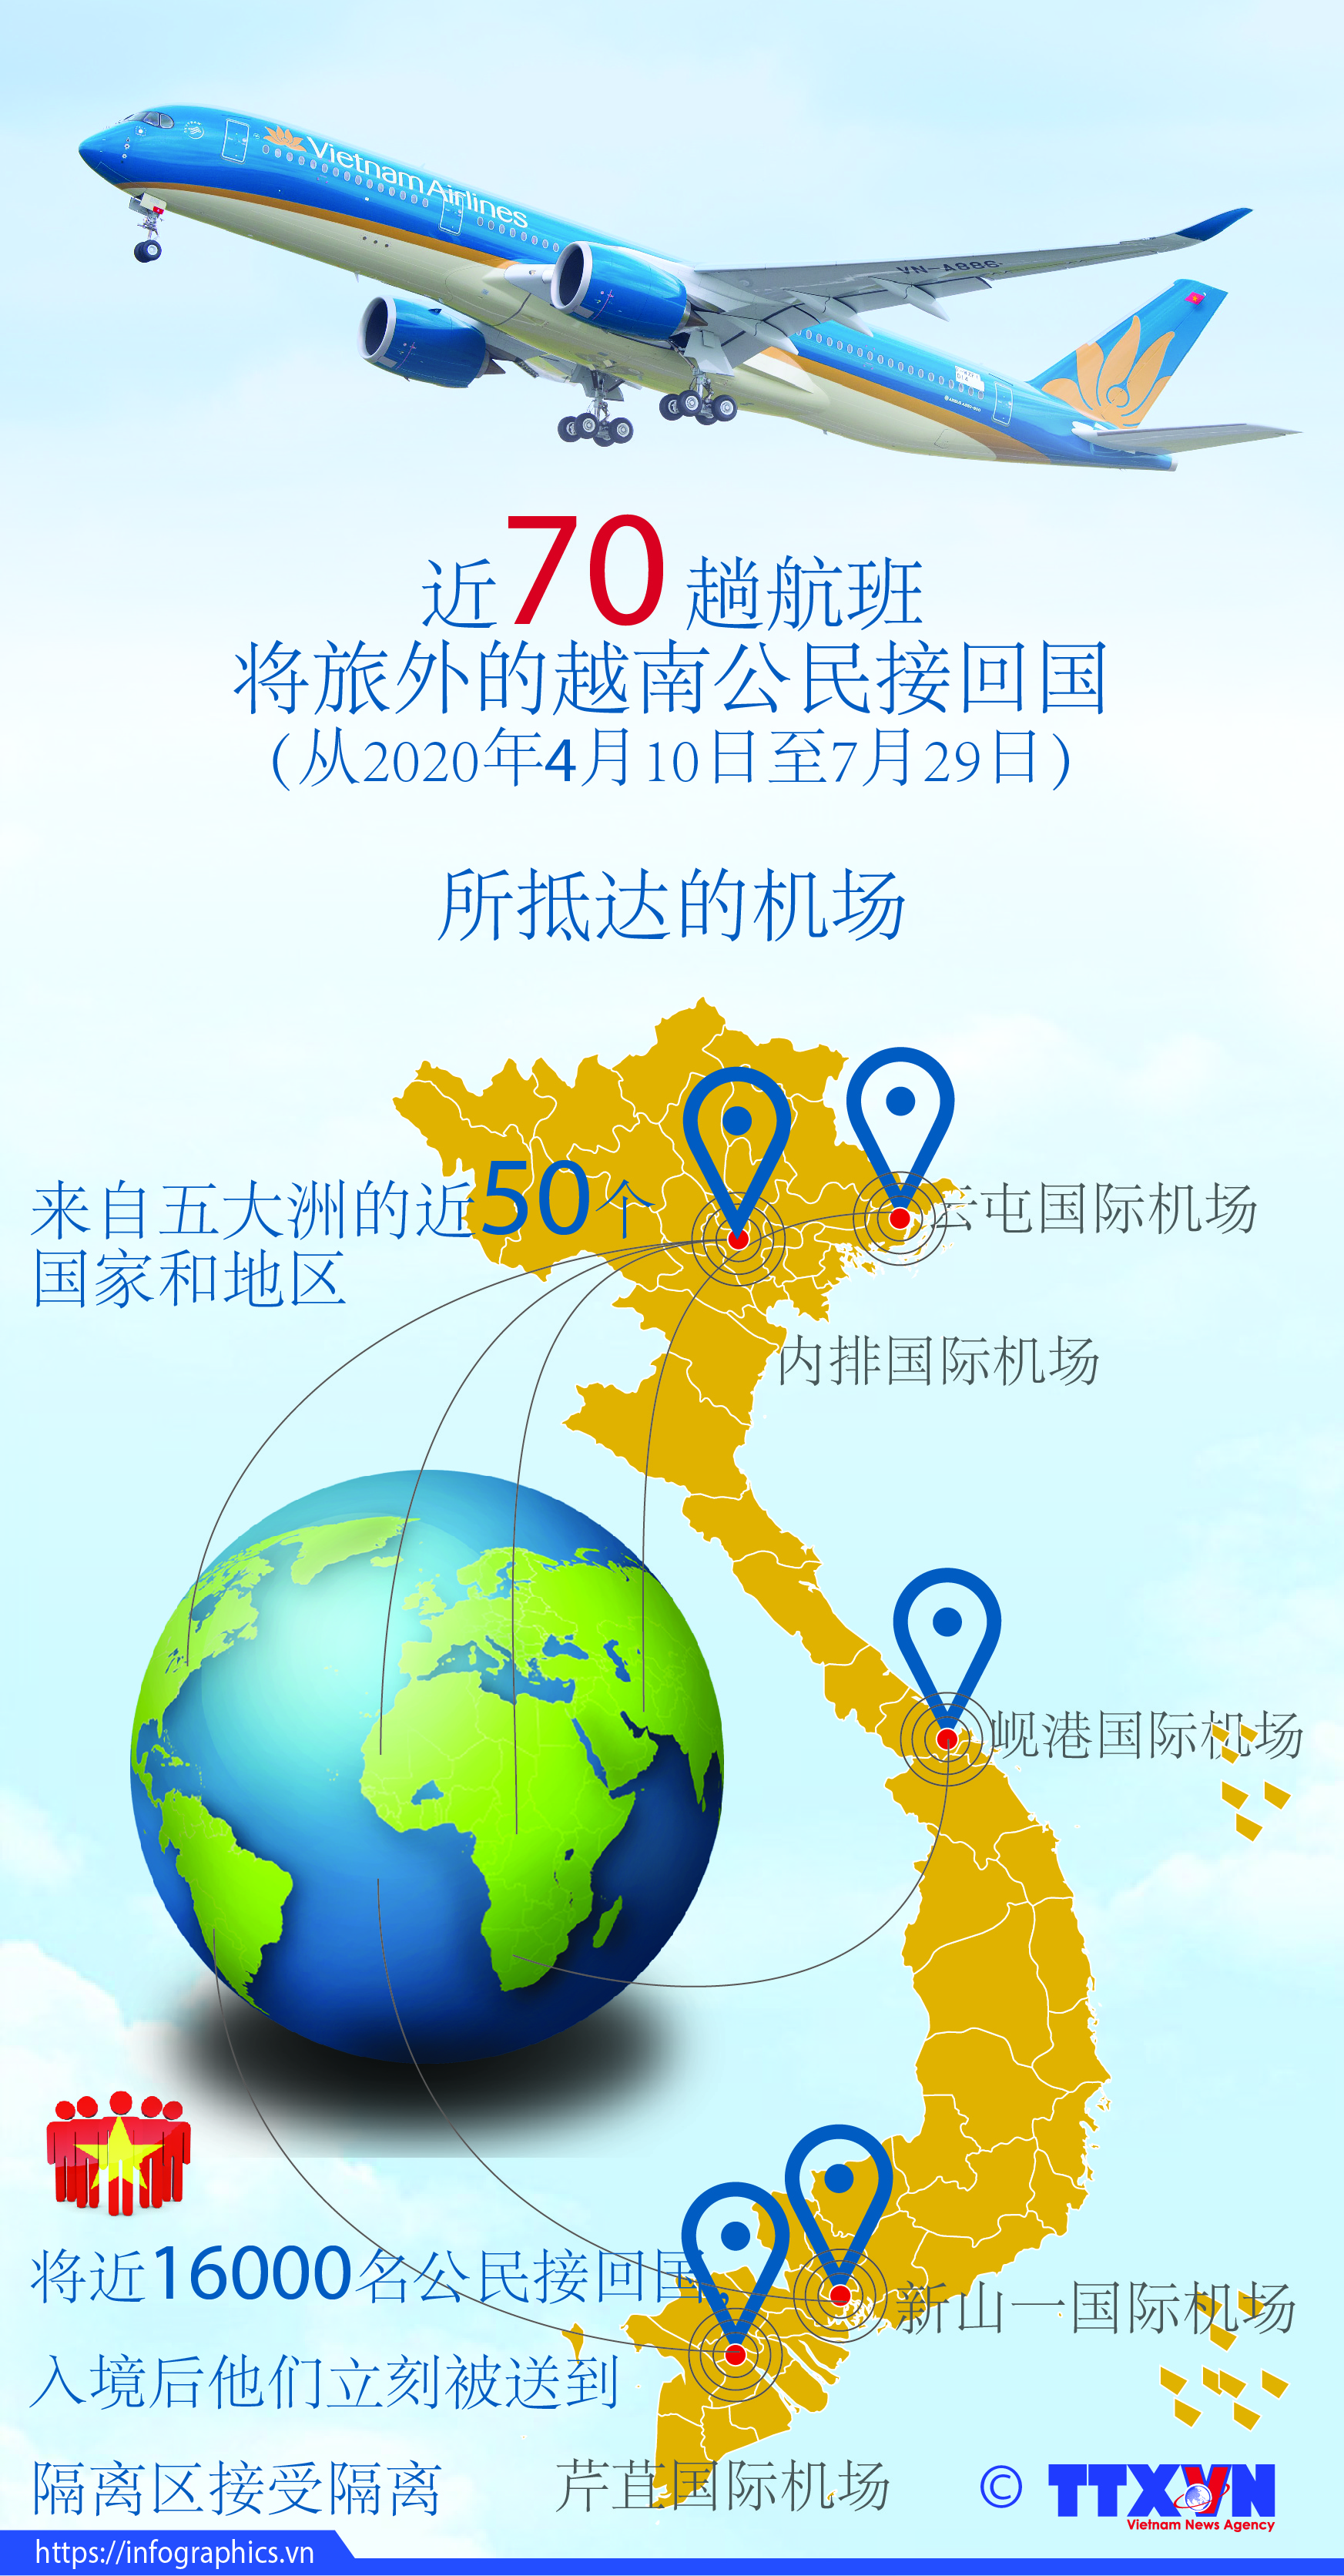                         从4月10日至7月29日越南组织近70趟航班将旅外越南公民接回国。